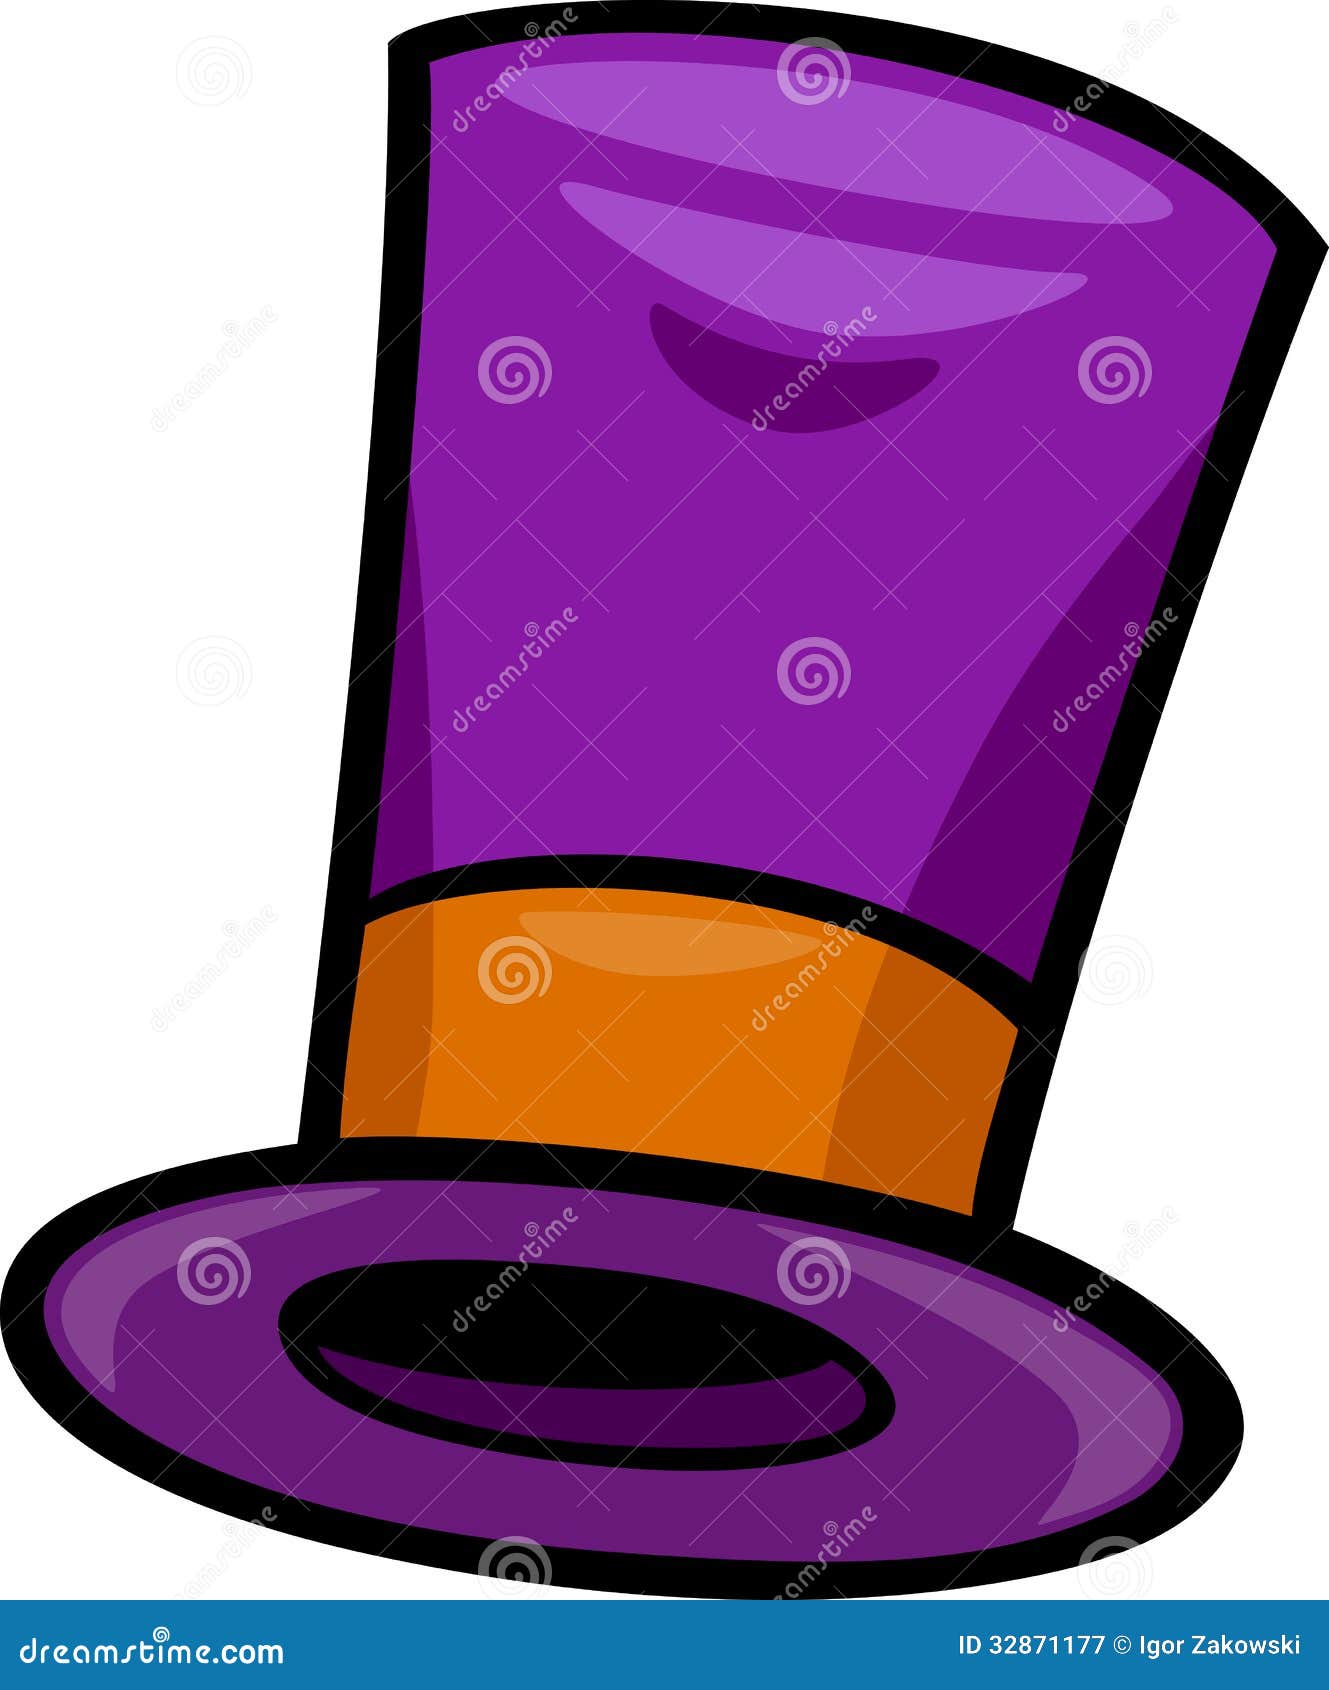 purple hat clipart - photo #19